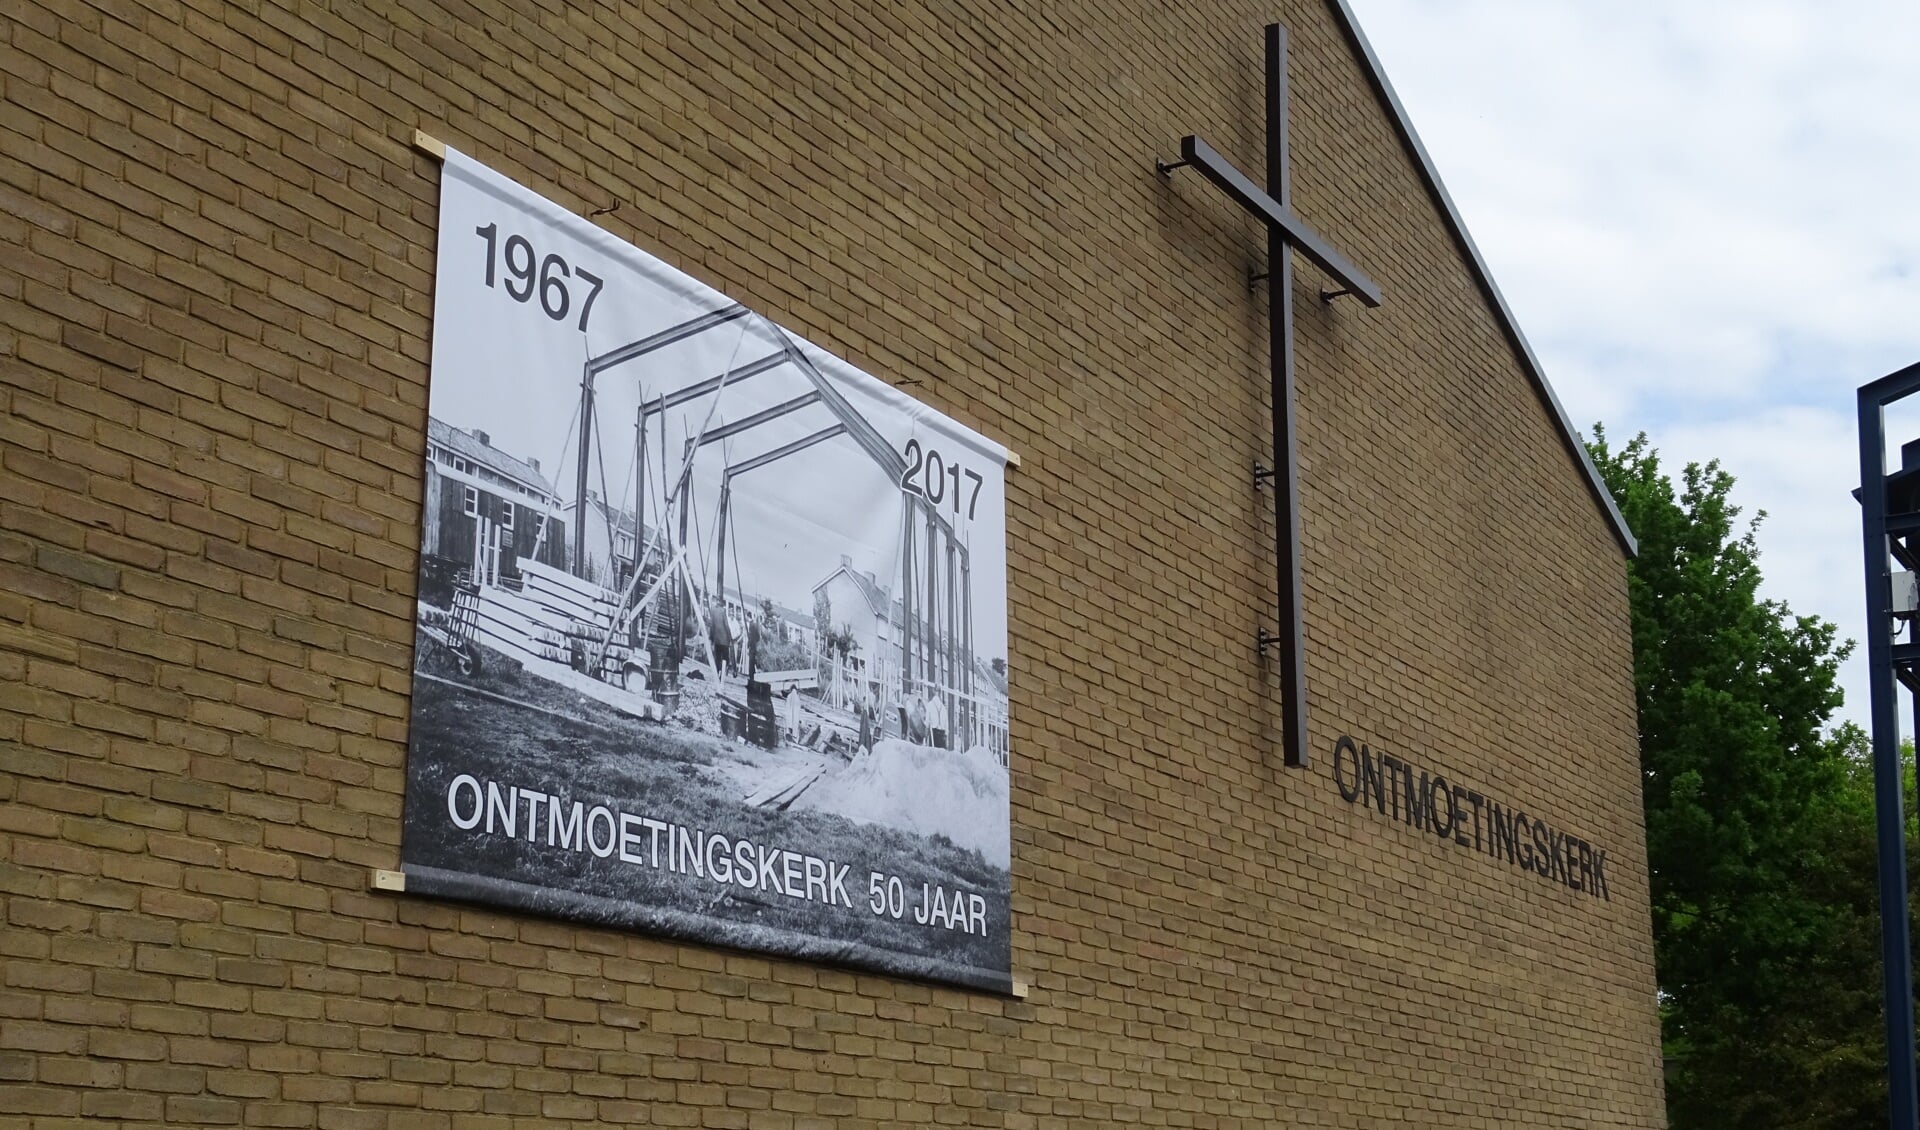  Het grote fotodoek op de muur van de kerk geeft een beeld van de in aanbouw zijnde kerk in 1967.